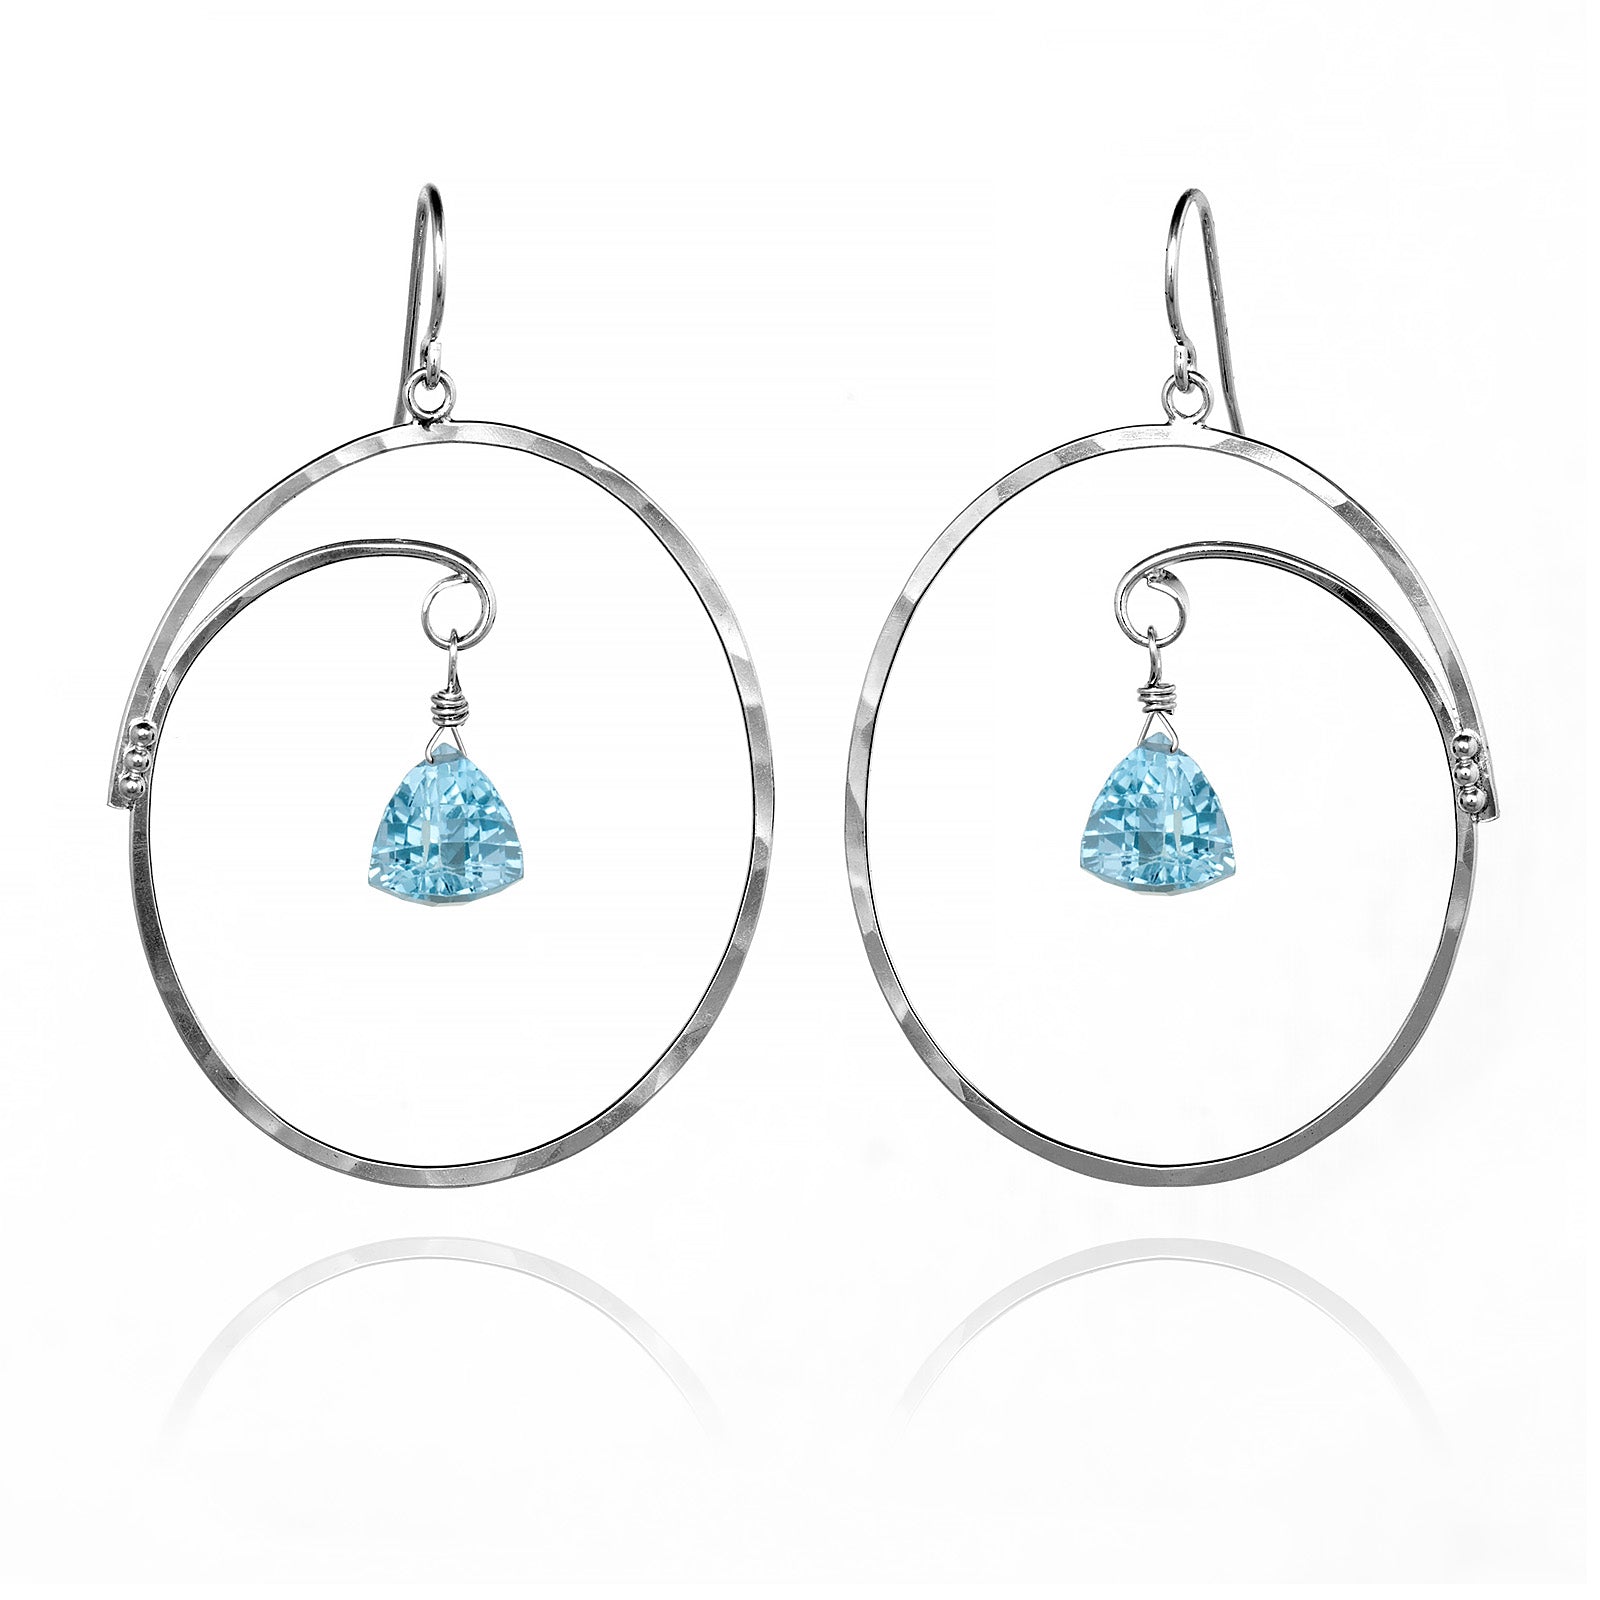 Designer Jewelry Earrings | Handmade Sterling Silver Jewelry – Tomomi ...